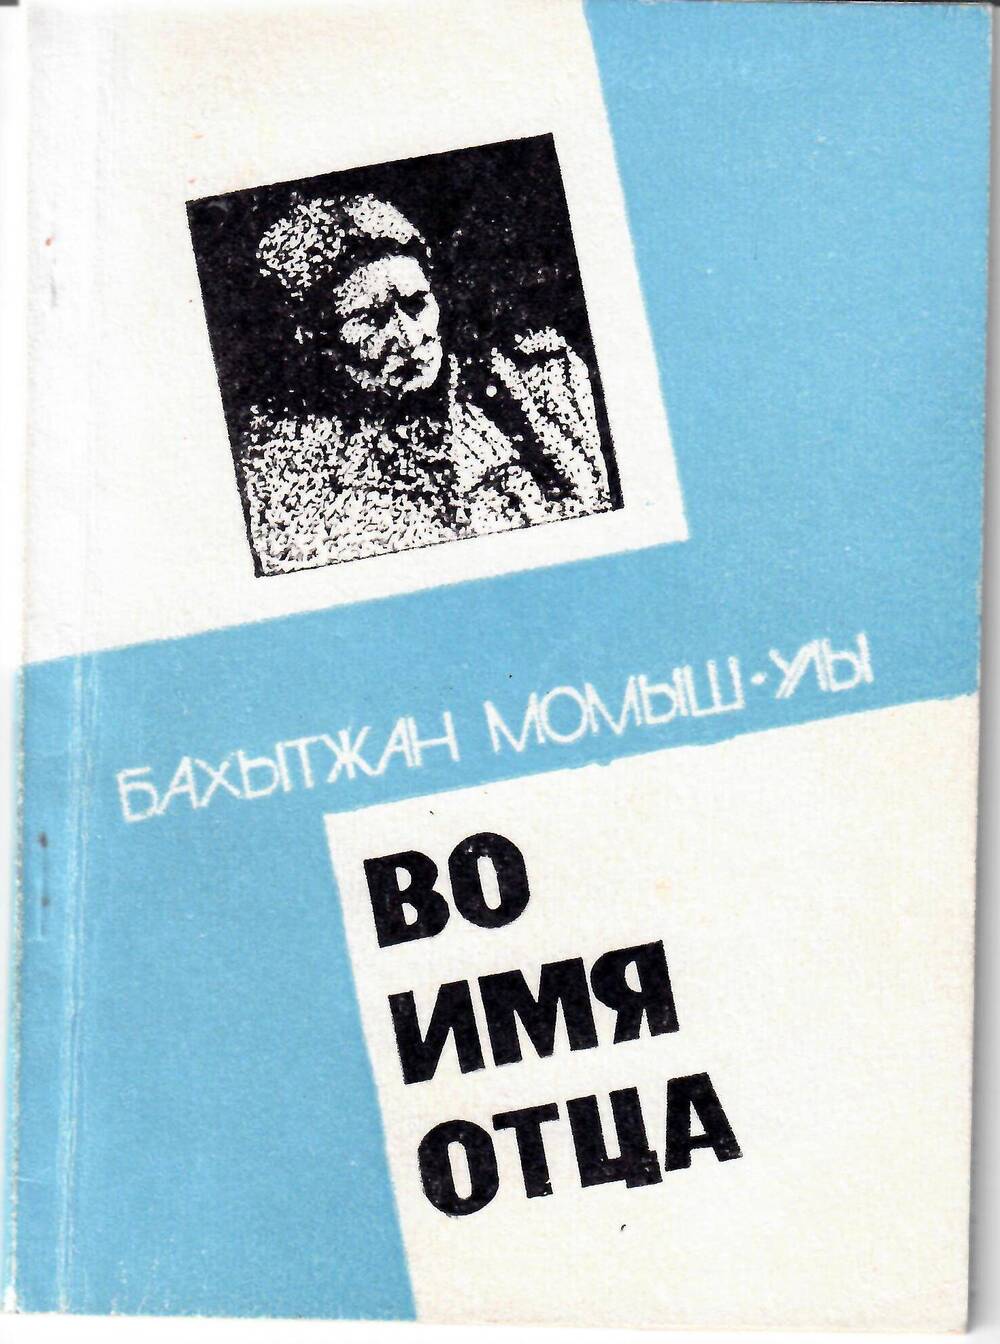 Книга Во имя отца, Бахытжан Момыш-Улы, изд. Тылыш, г. Алма-Ата, 1991 г.